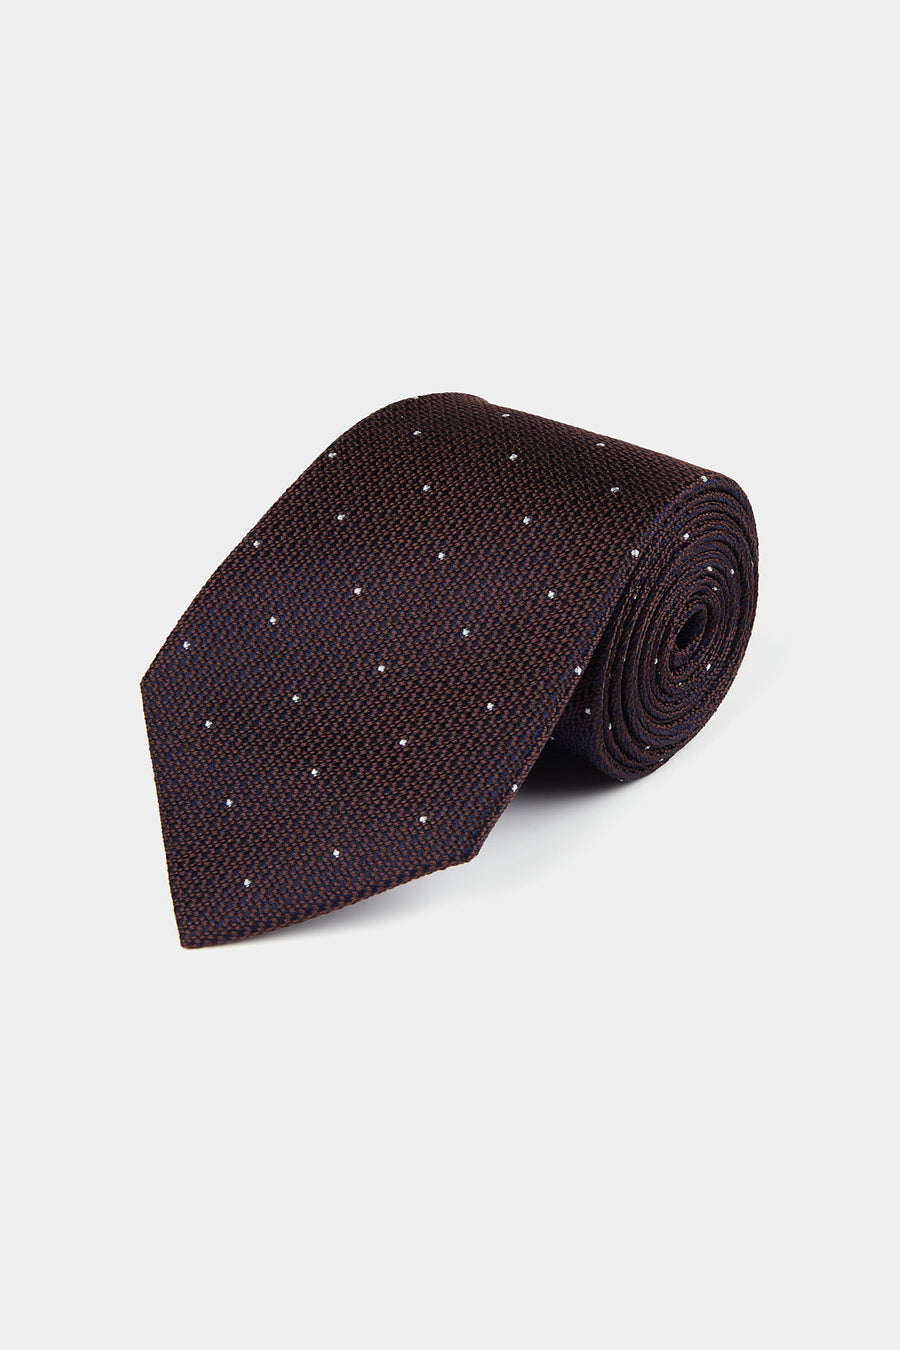 100% Silk Polka Dot Tie in Carafe